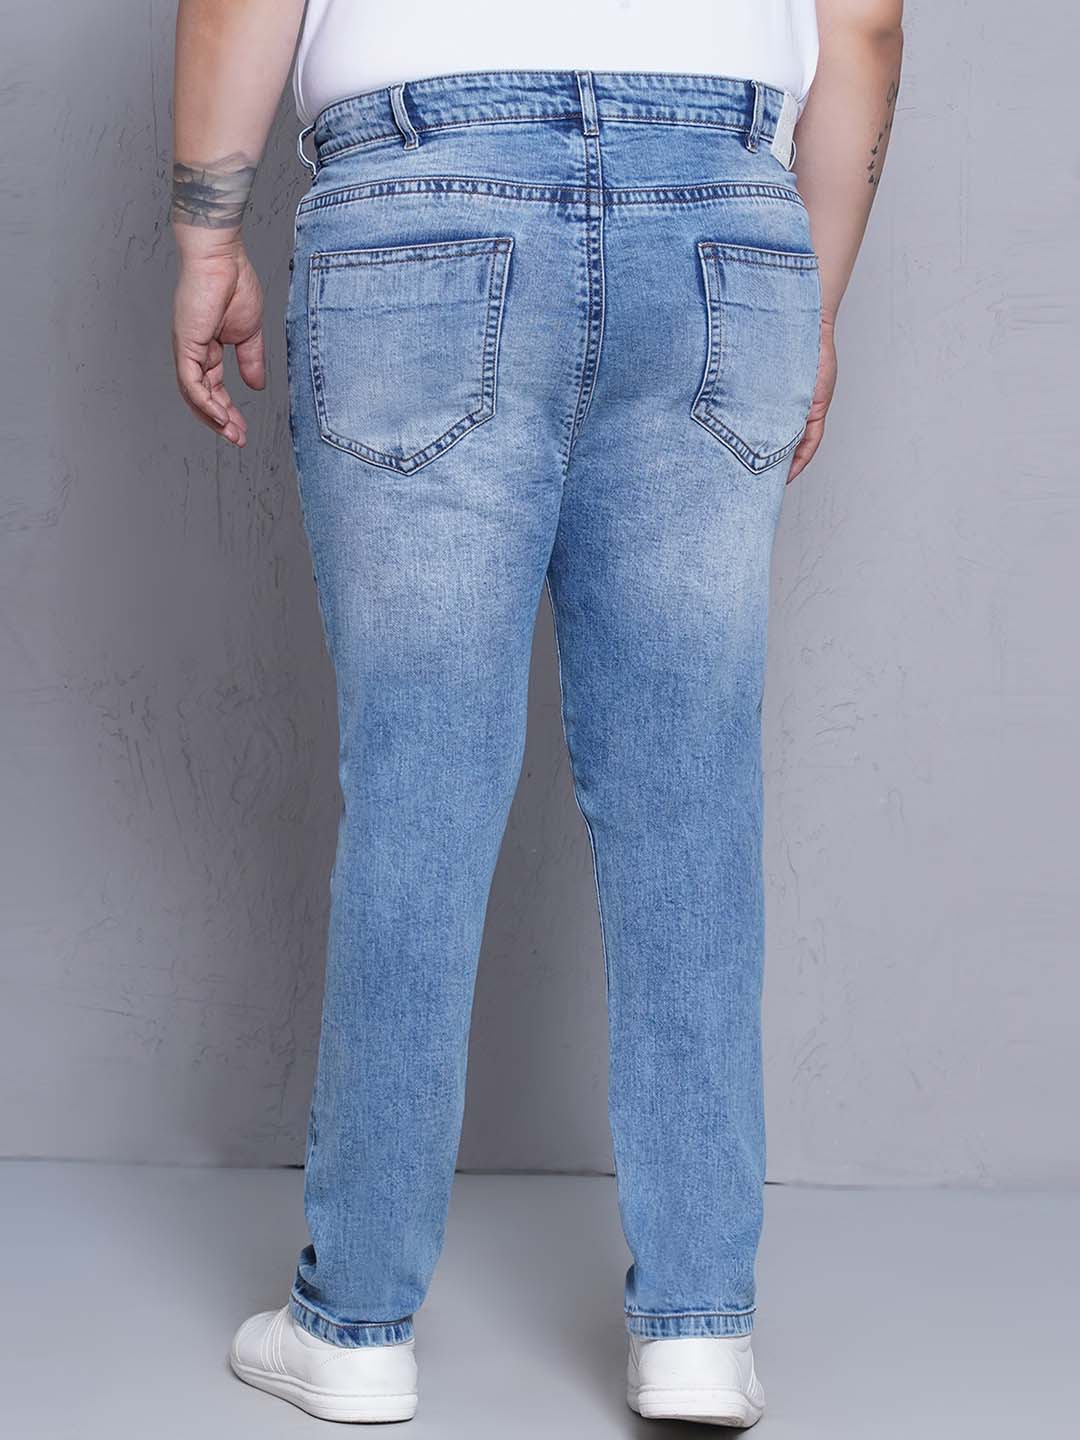 bottomwear/jeans/JPJ27117/jpj27117-5.jpg